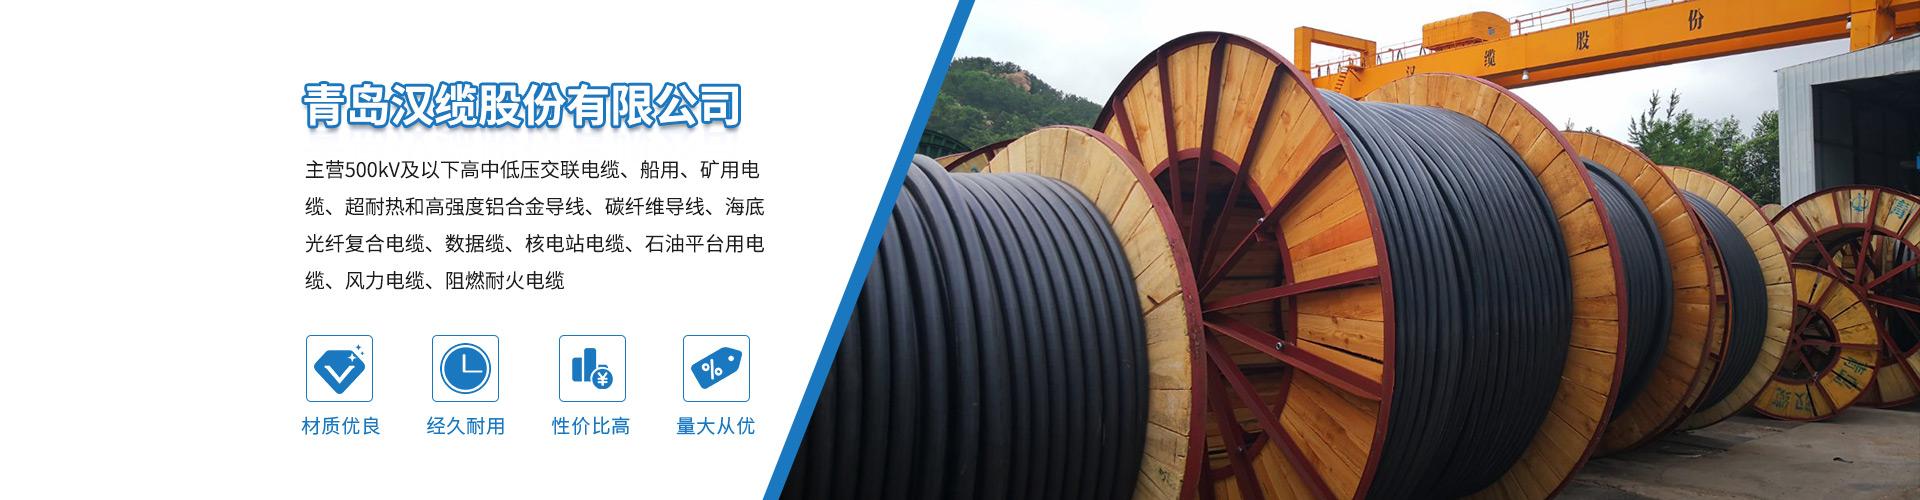 汉河电缆产品列表